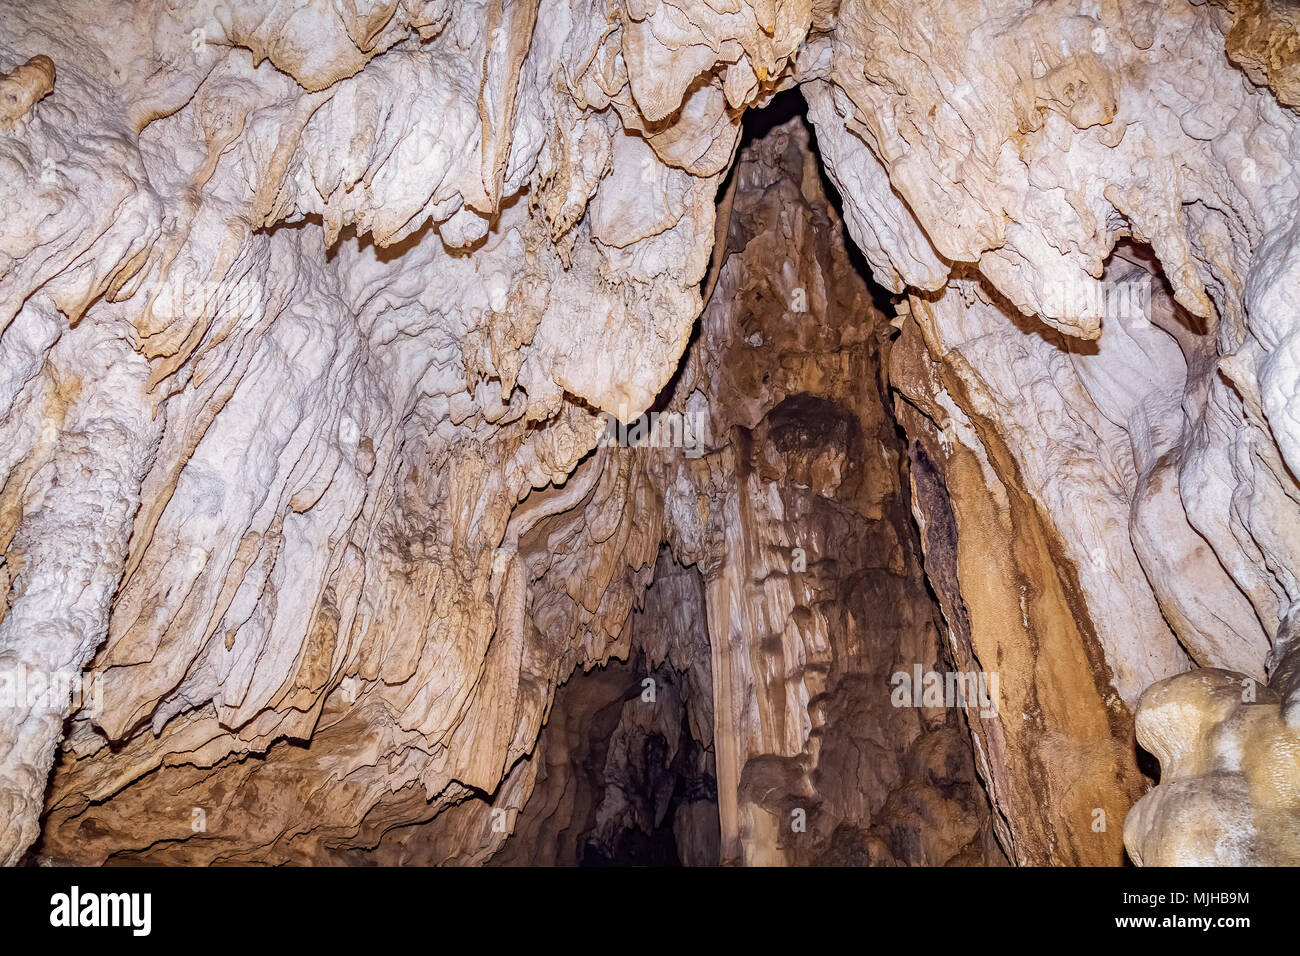 Limestone cave natural rock formations close up view at Baratang island, Andaman India. Stock Photo